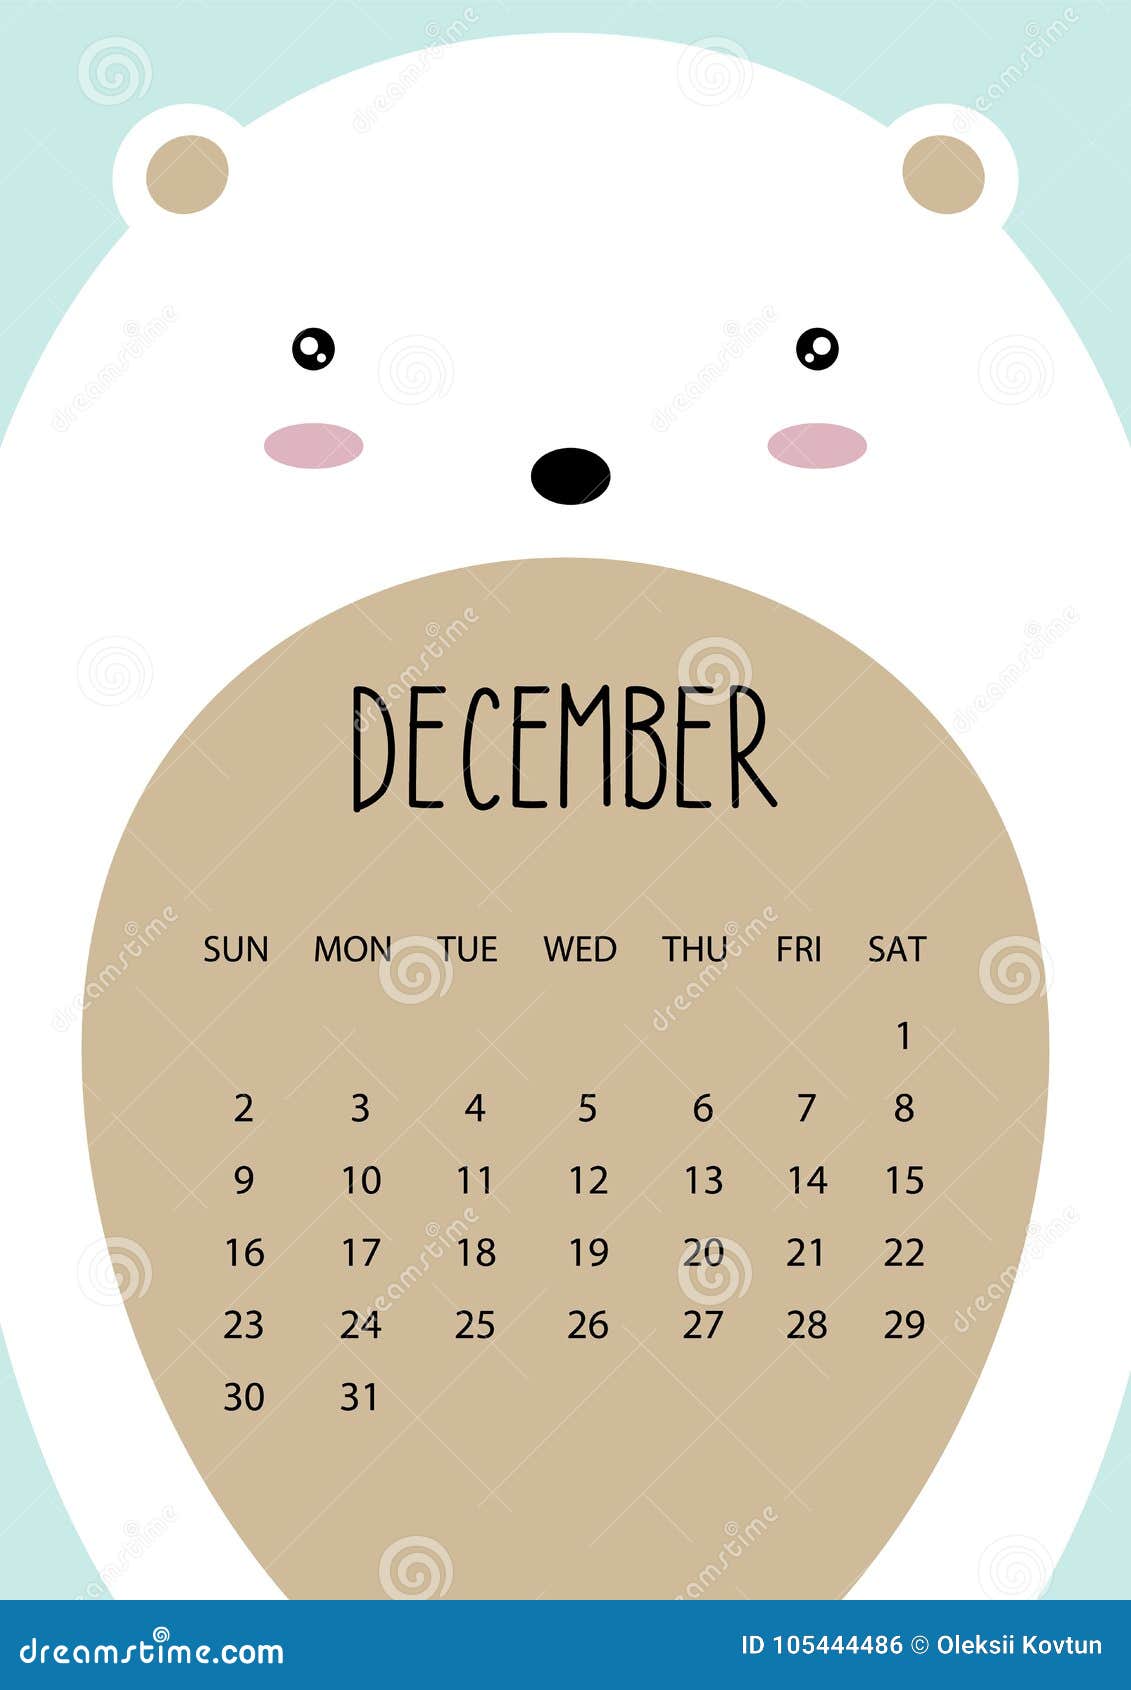 cute-month-calendar-design-for-2018-year-bear-december-a4-format